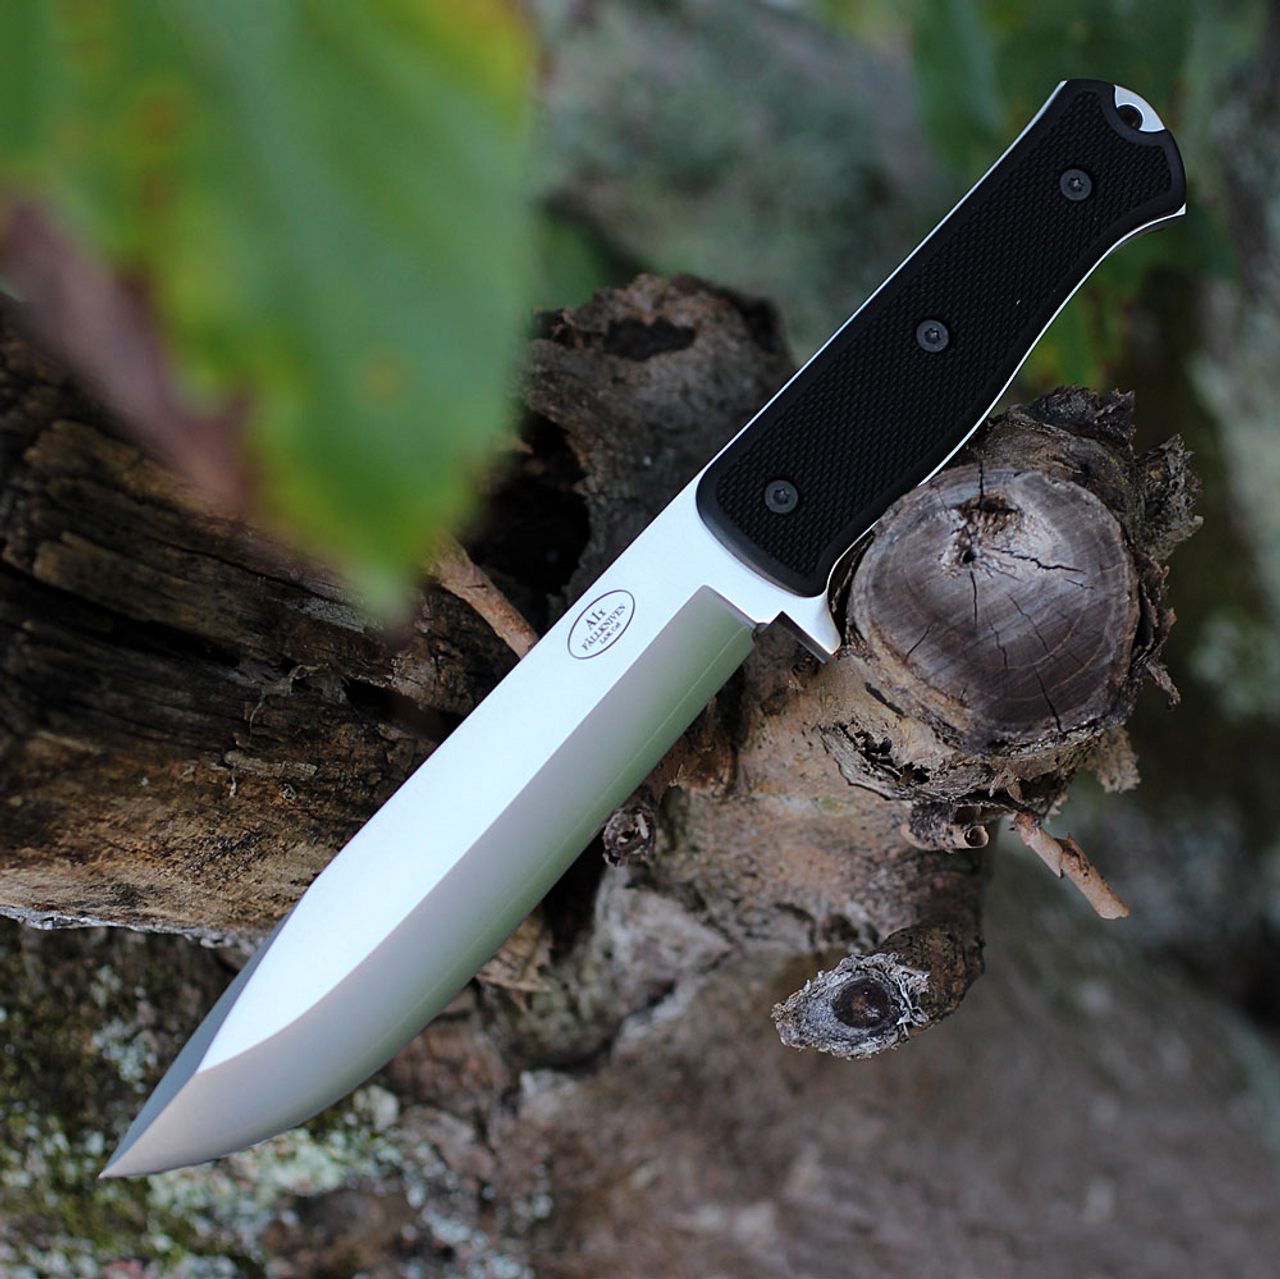 Fallkniven A1X Fixed Blade Knife Thermorun (6.875 Tungsten Carbide) - Blade  HQ